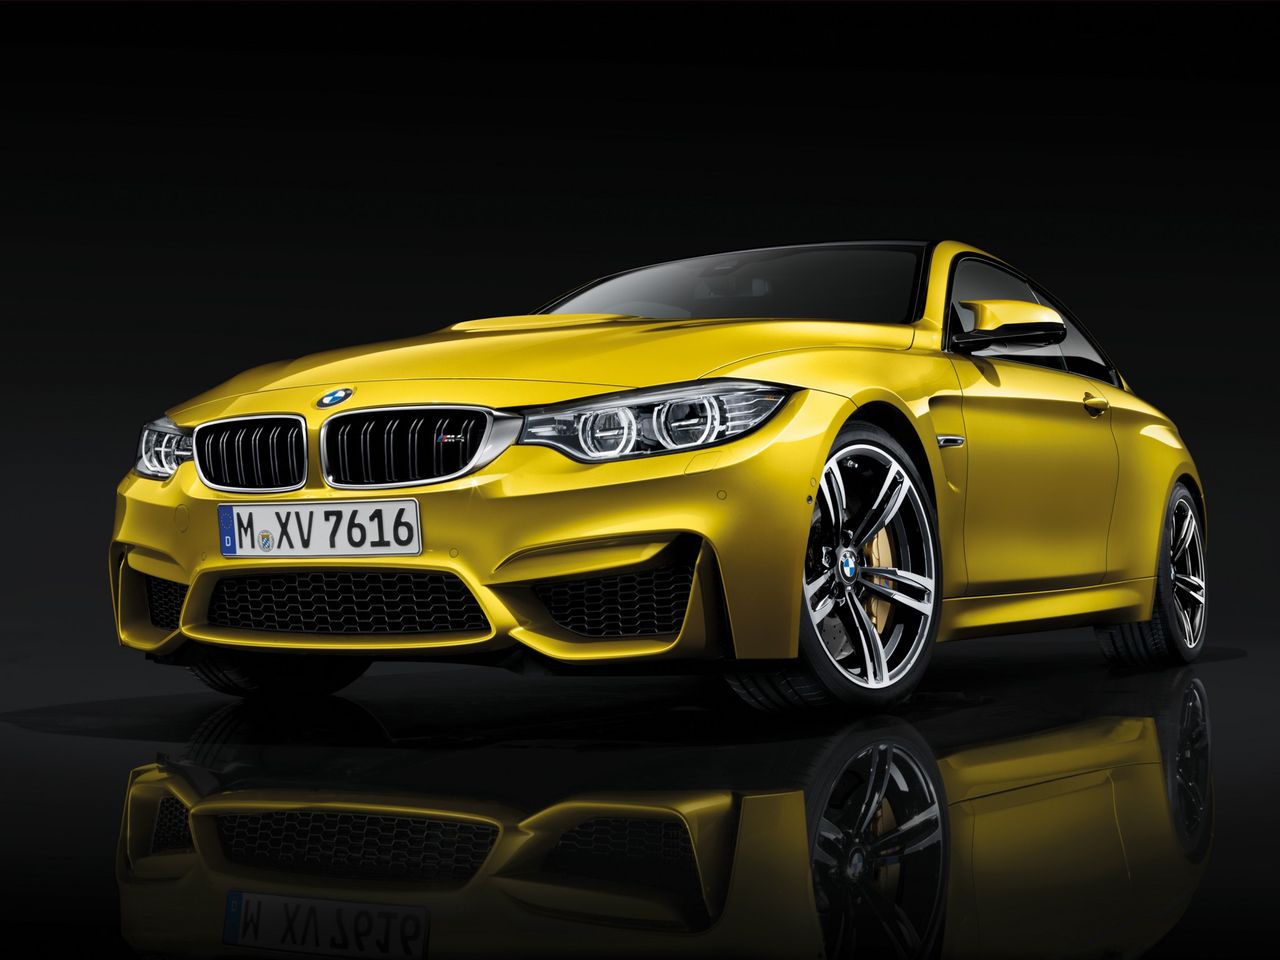 Tak, również BMW M4 może ulec hatchbackowi ze Stuttgartu. 431-konne M4 z ręczną skrzynią biegów potrzebuje na rozpędzenie do 100 km/h 4,3 s.